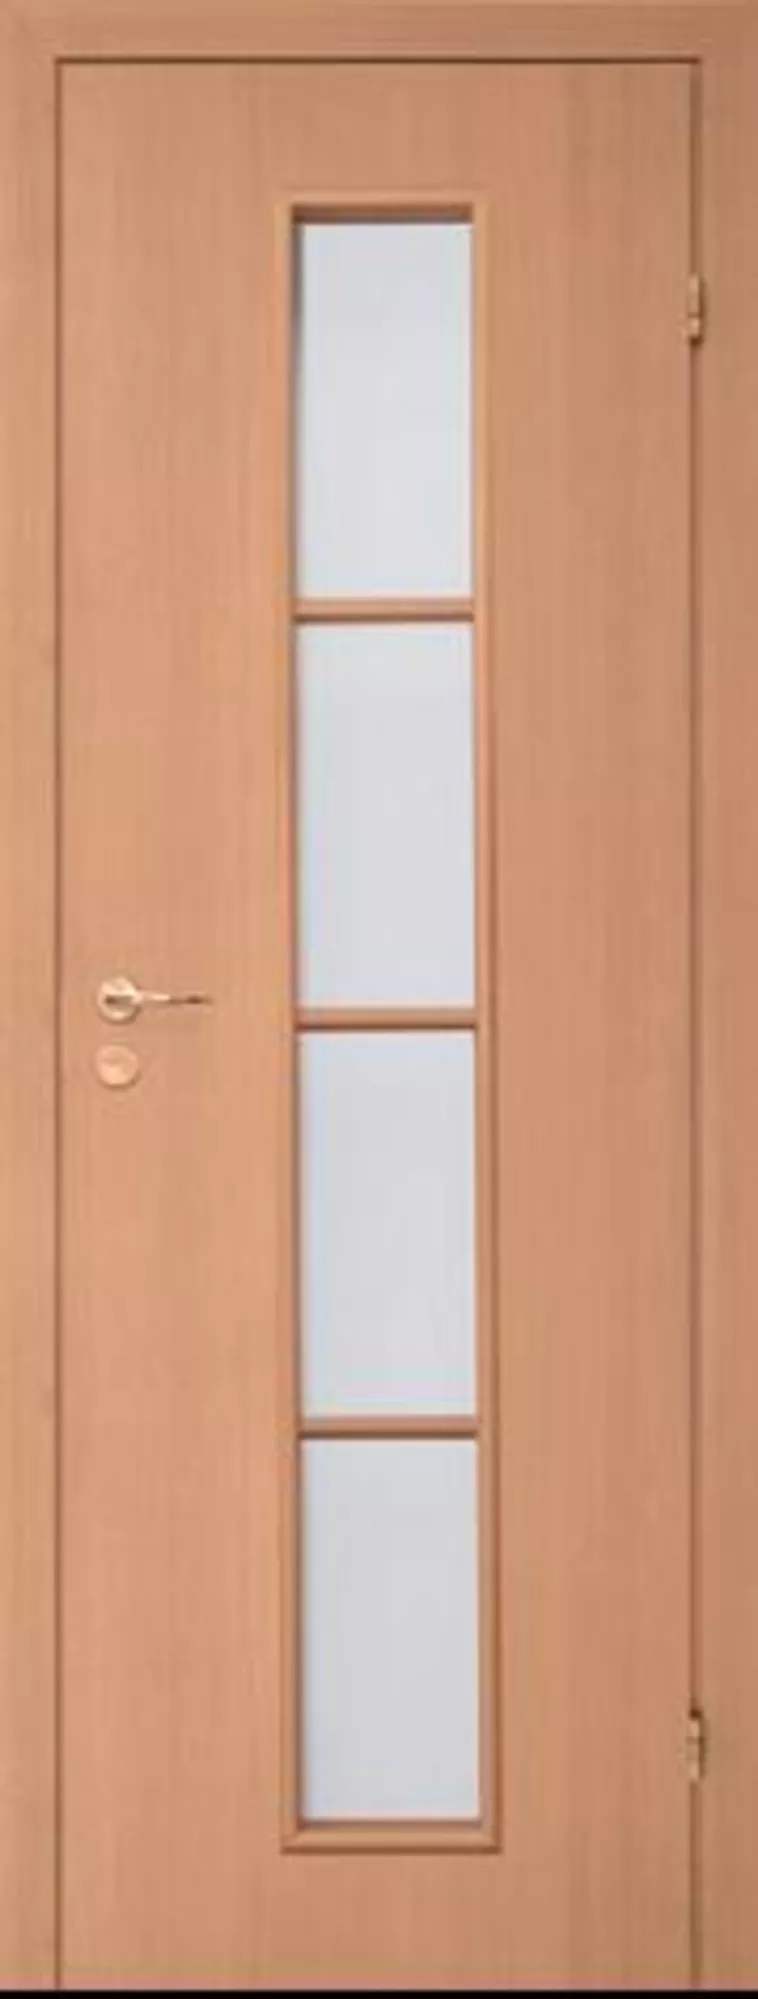 Ламинированная дверь беленый дуб 4с